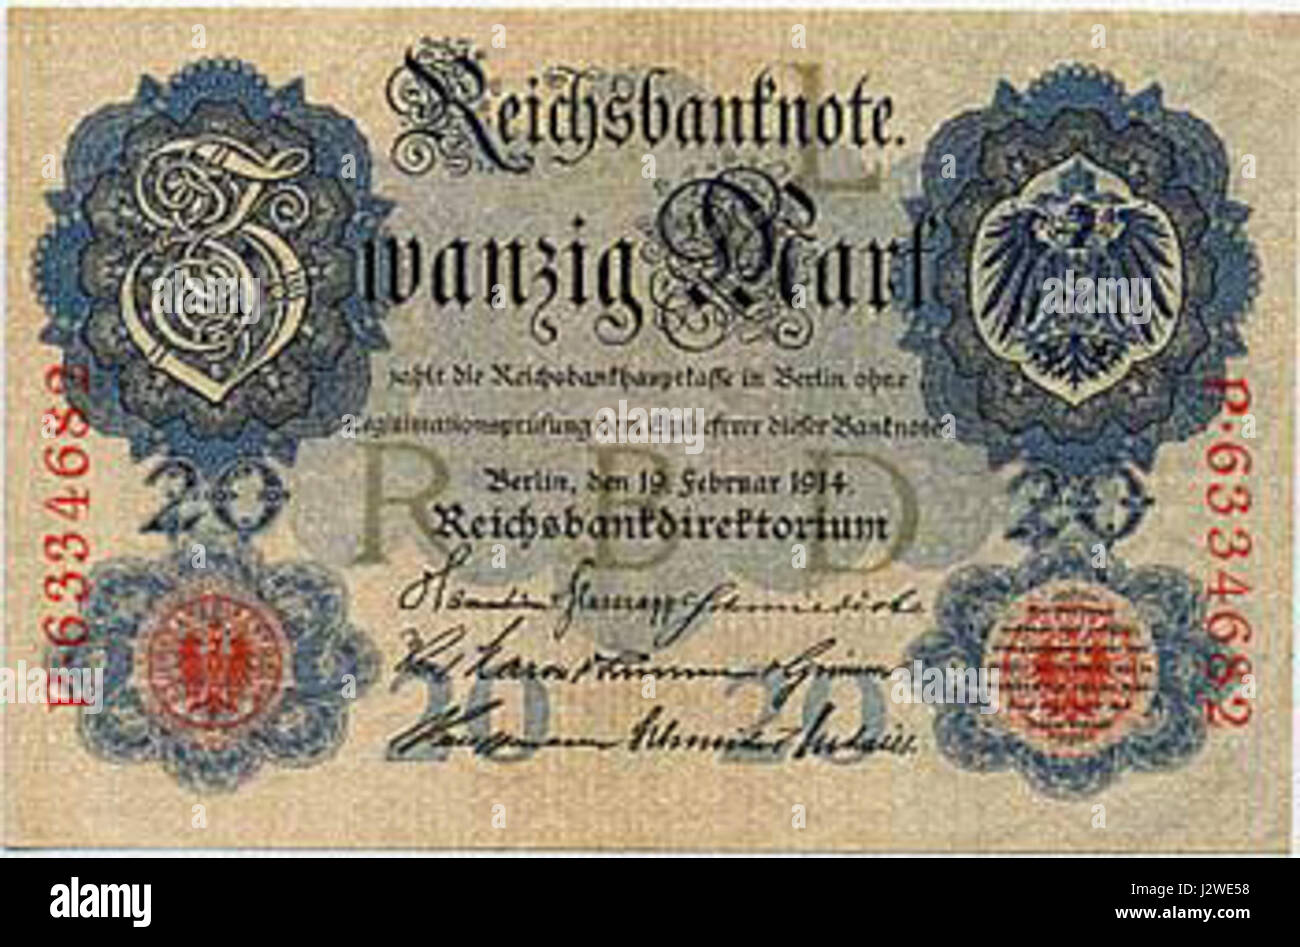 20 deutsche mark 1914 Stock Photo